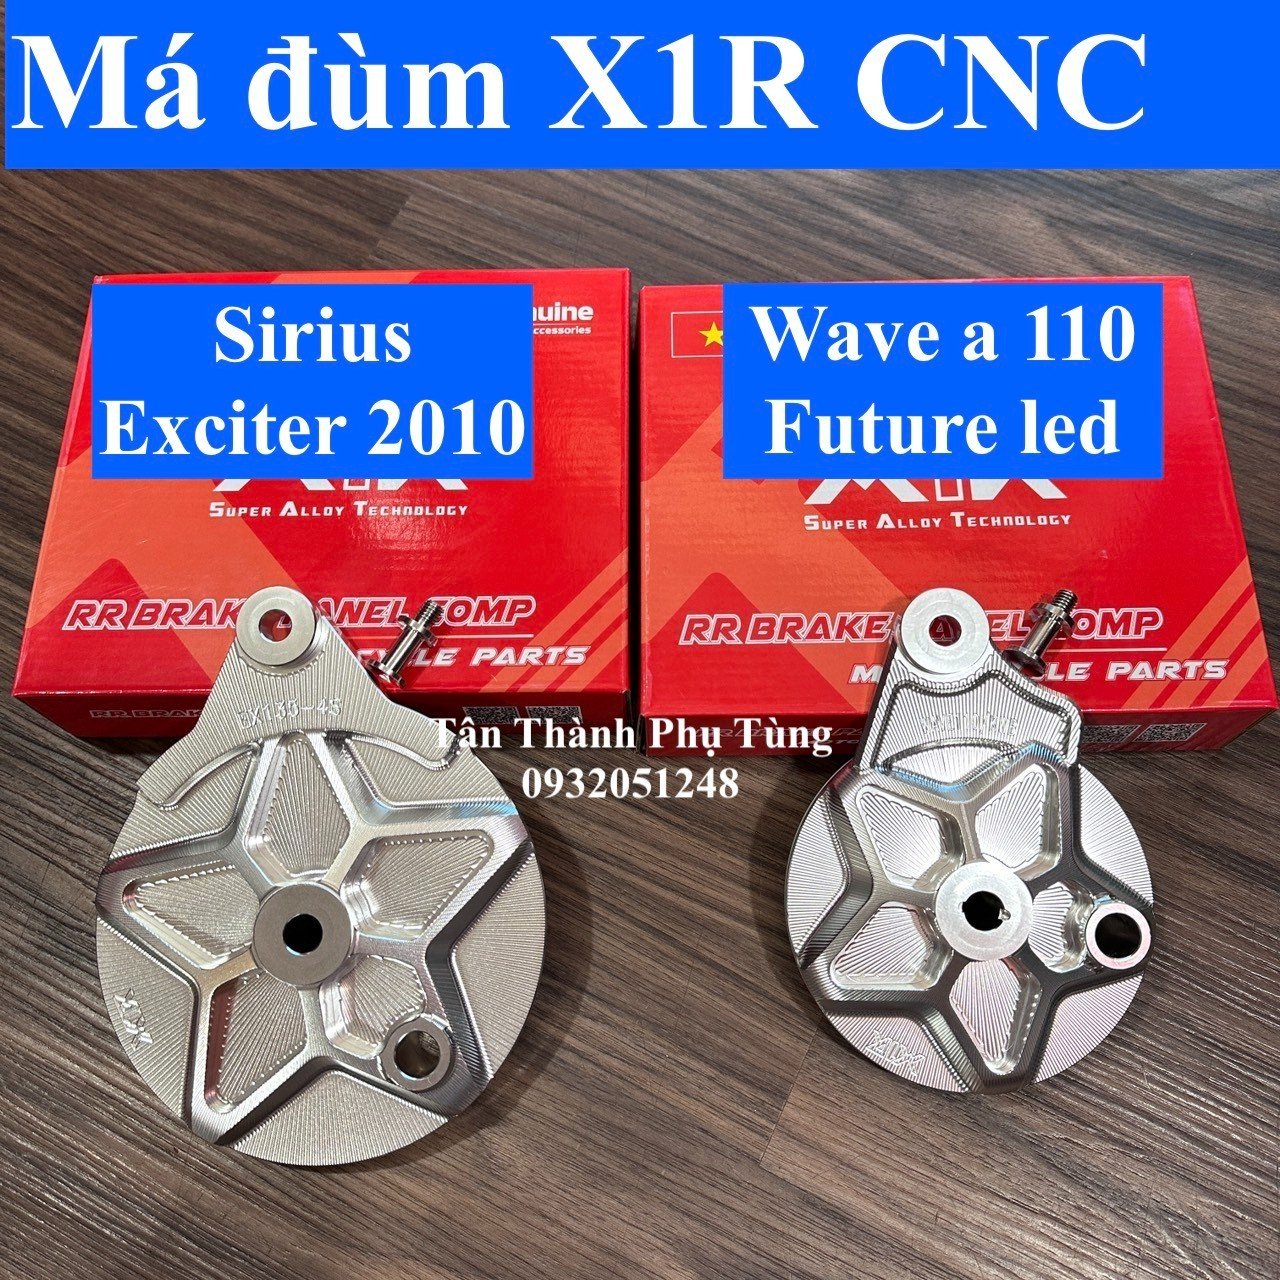 Má đùm X1R CNC 3D chính hãng : Exciter 2010/ Sirius, Wave a 110/ Future Led đồchơixe